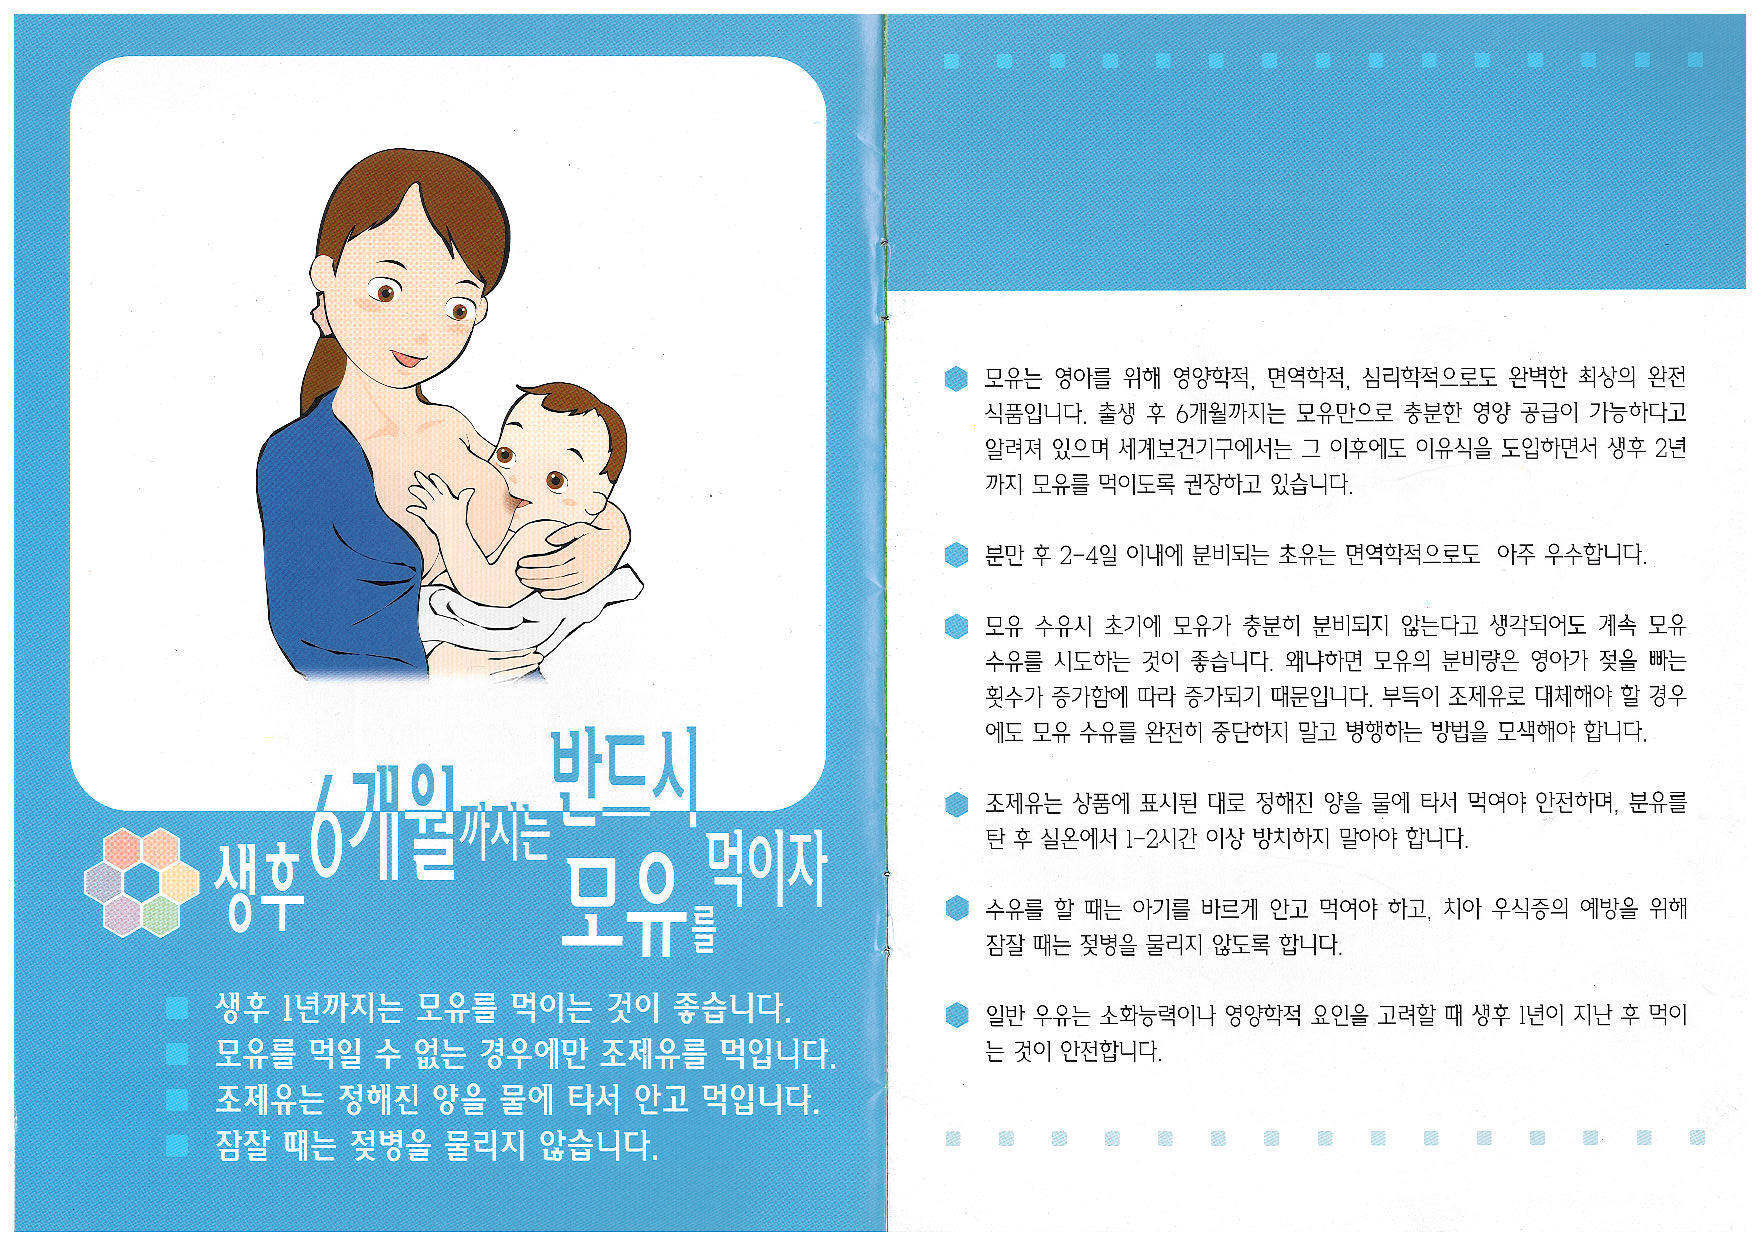 영유아를 위한 식생활 실천지침(1)